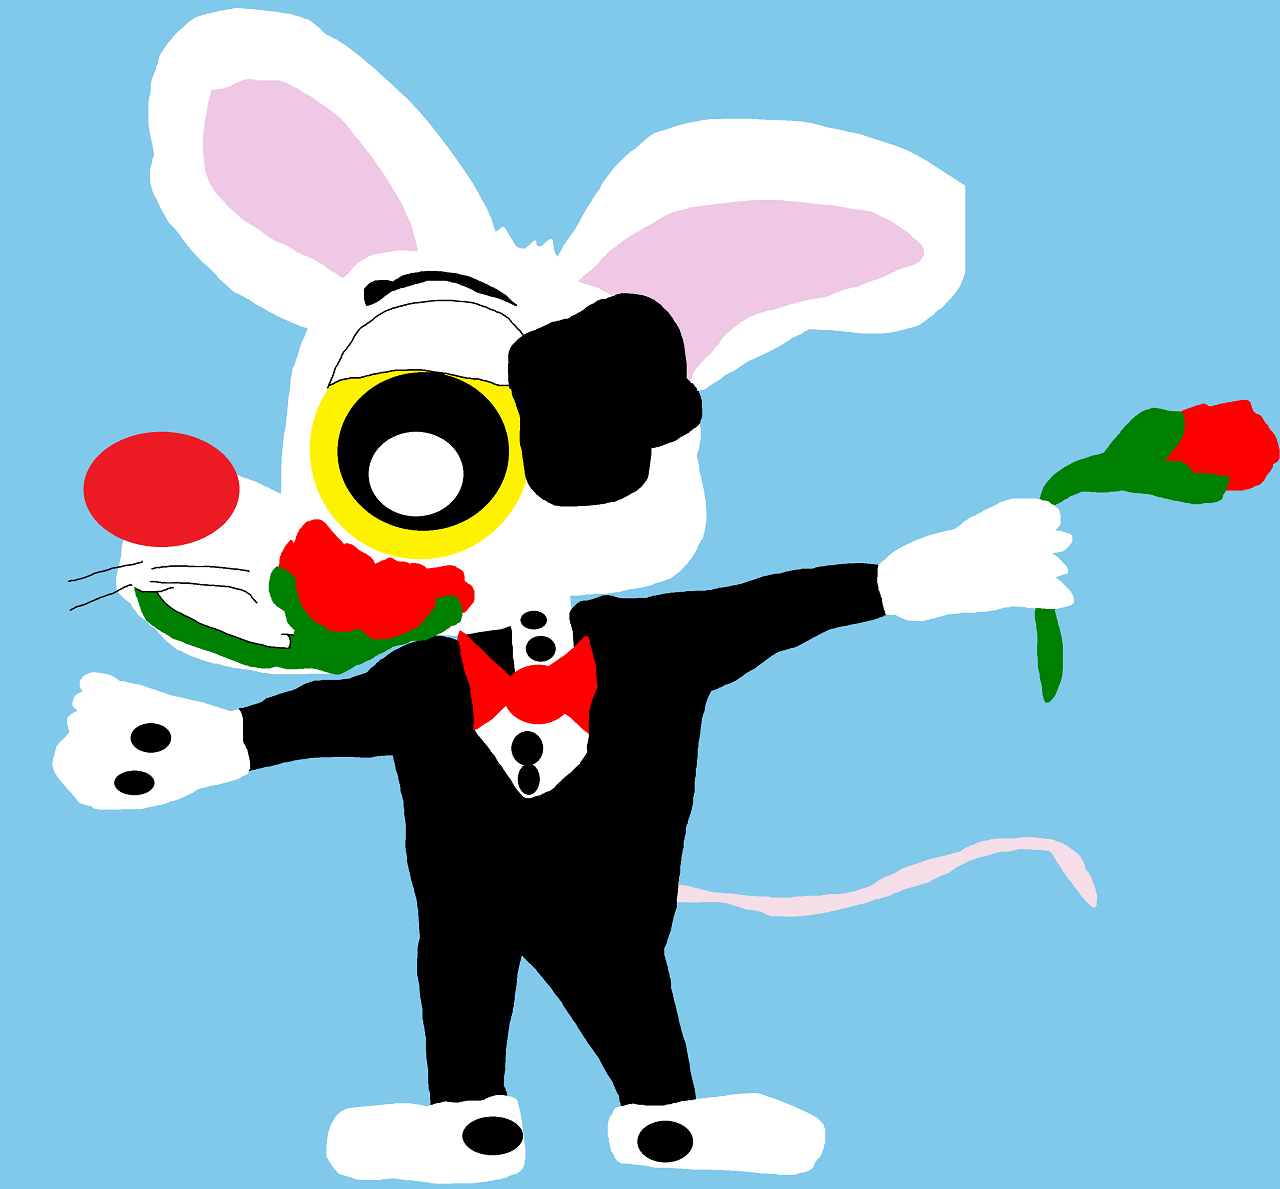 A Fancy Mouse by Falconlobo